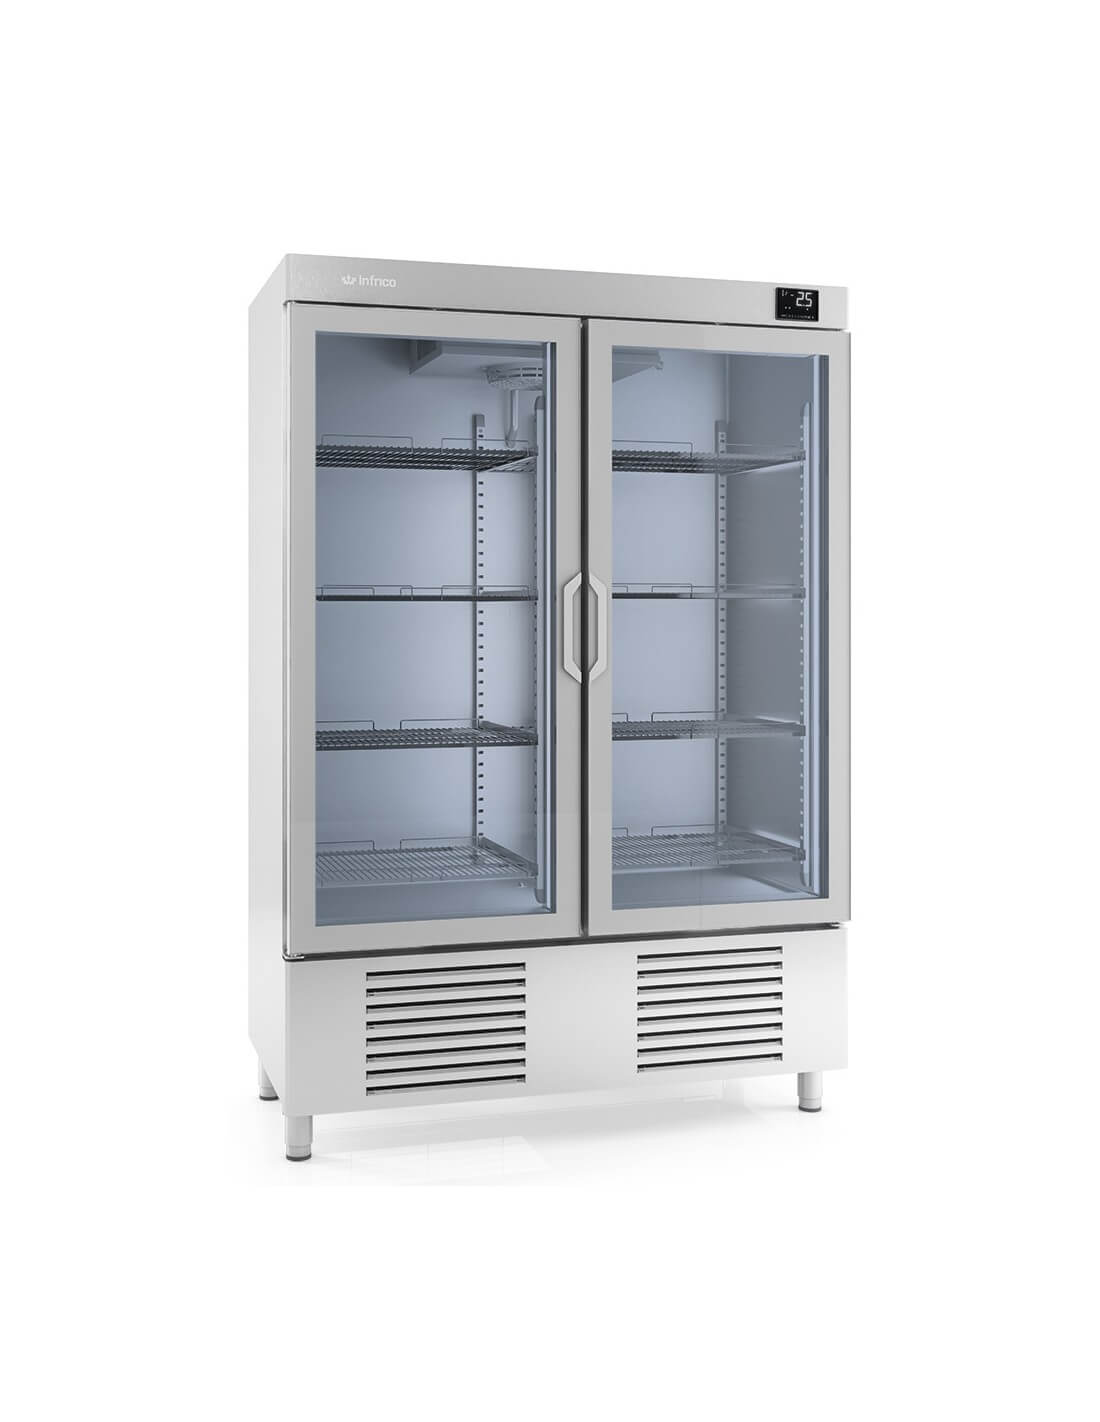 ¿Existen opciones de armarios expositores congeladores con iluminación LED?